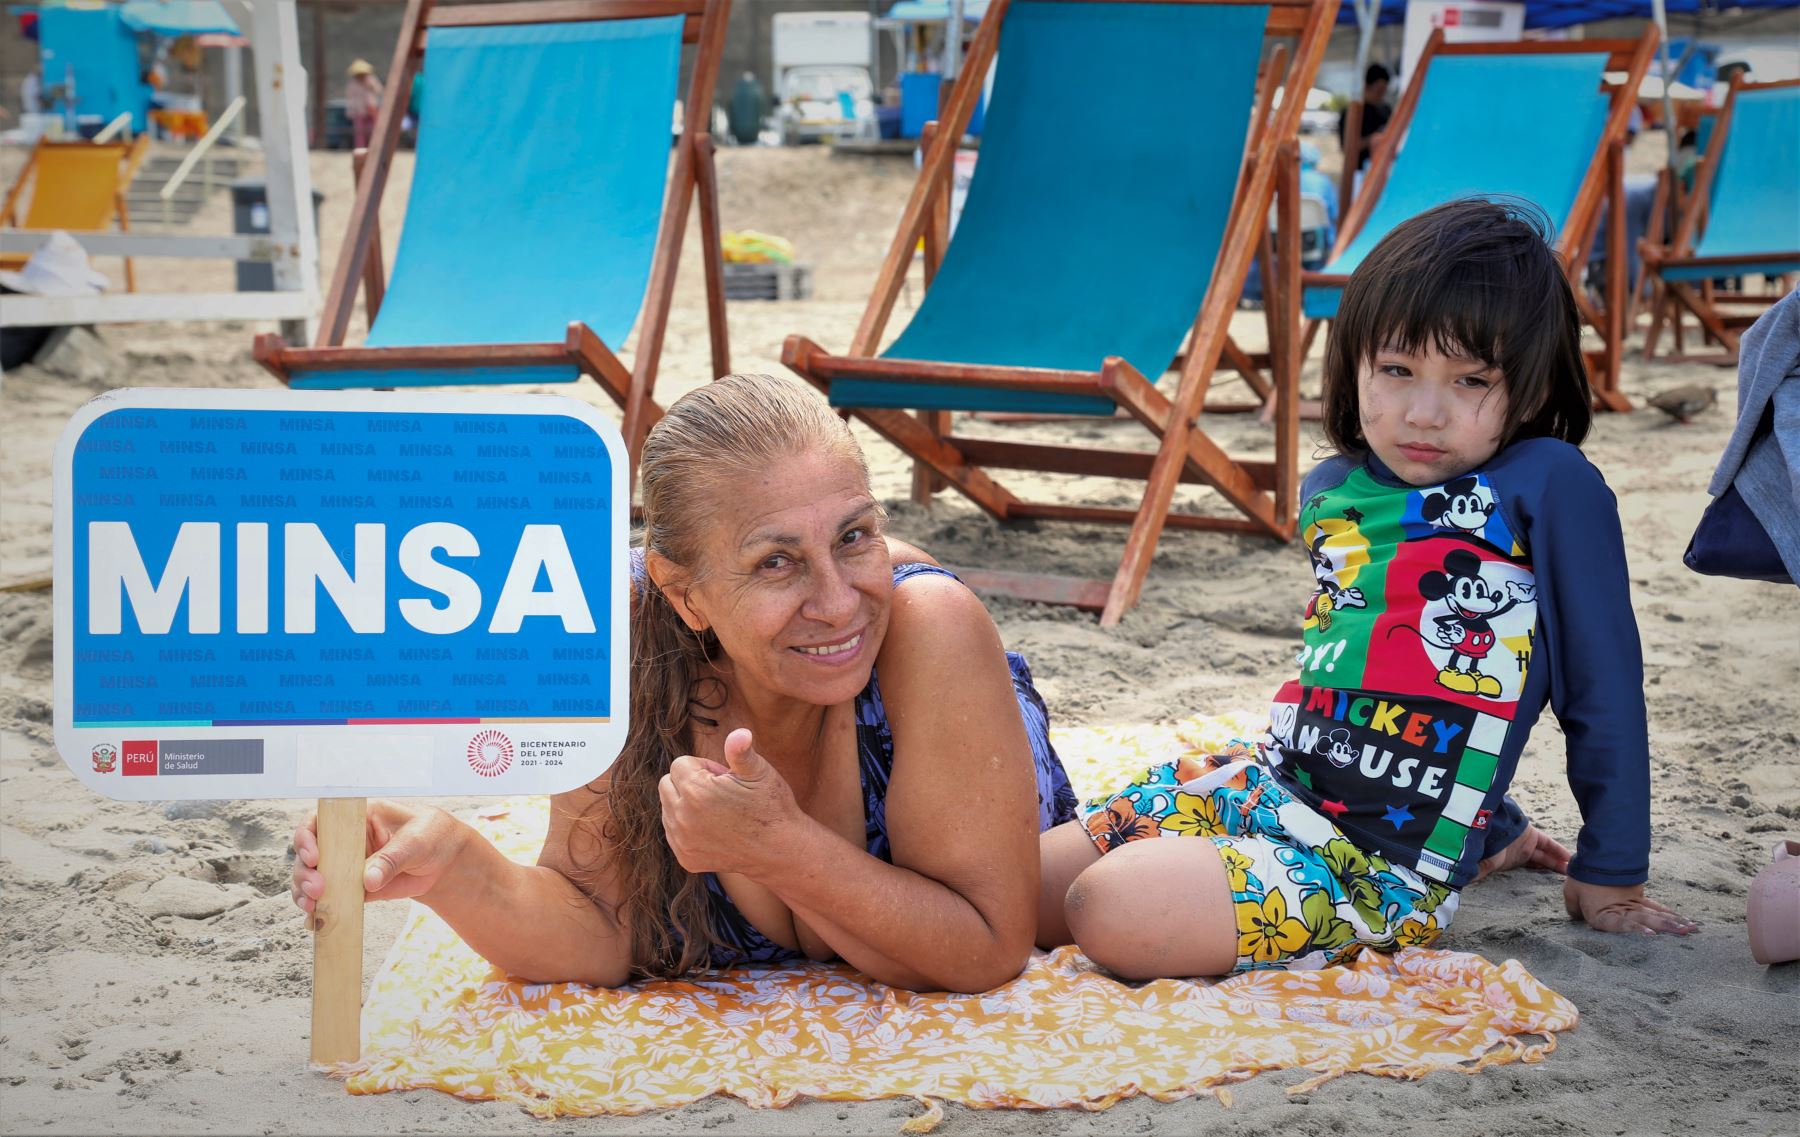 Como parte de las actividades del Día del Lunar, el Minsa realizó una campaña de salud en la playa Los Yuyos de Barranco, donde los veraneantes recibieron información sobre los cuidados necesarios para evitar el cáncer de piel.

Foto: ANDINA/MINSA